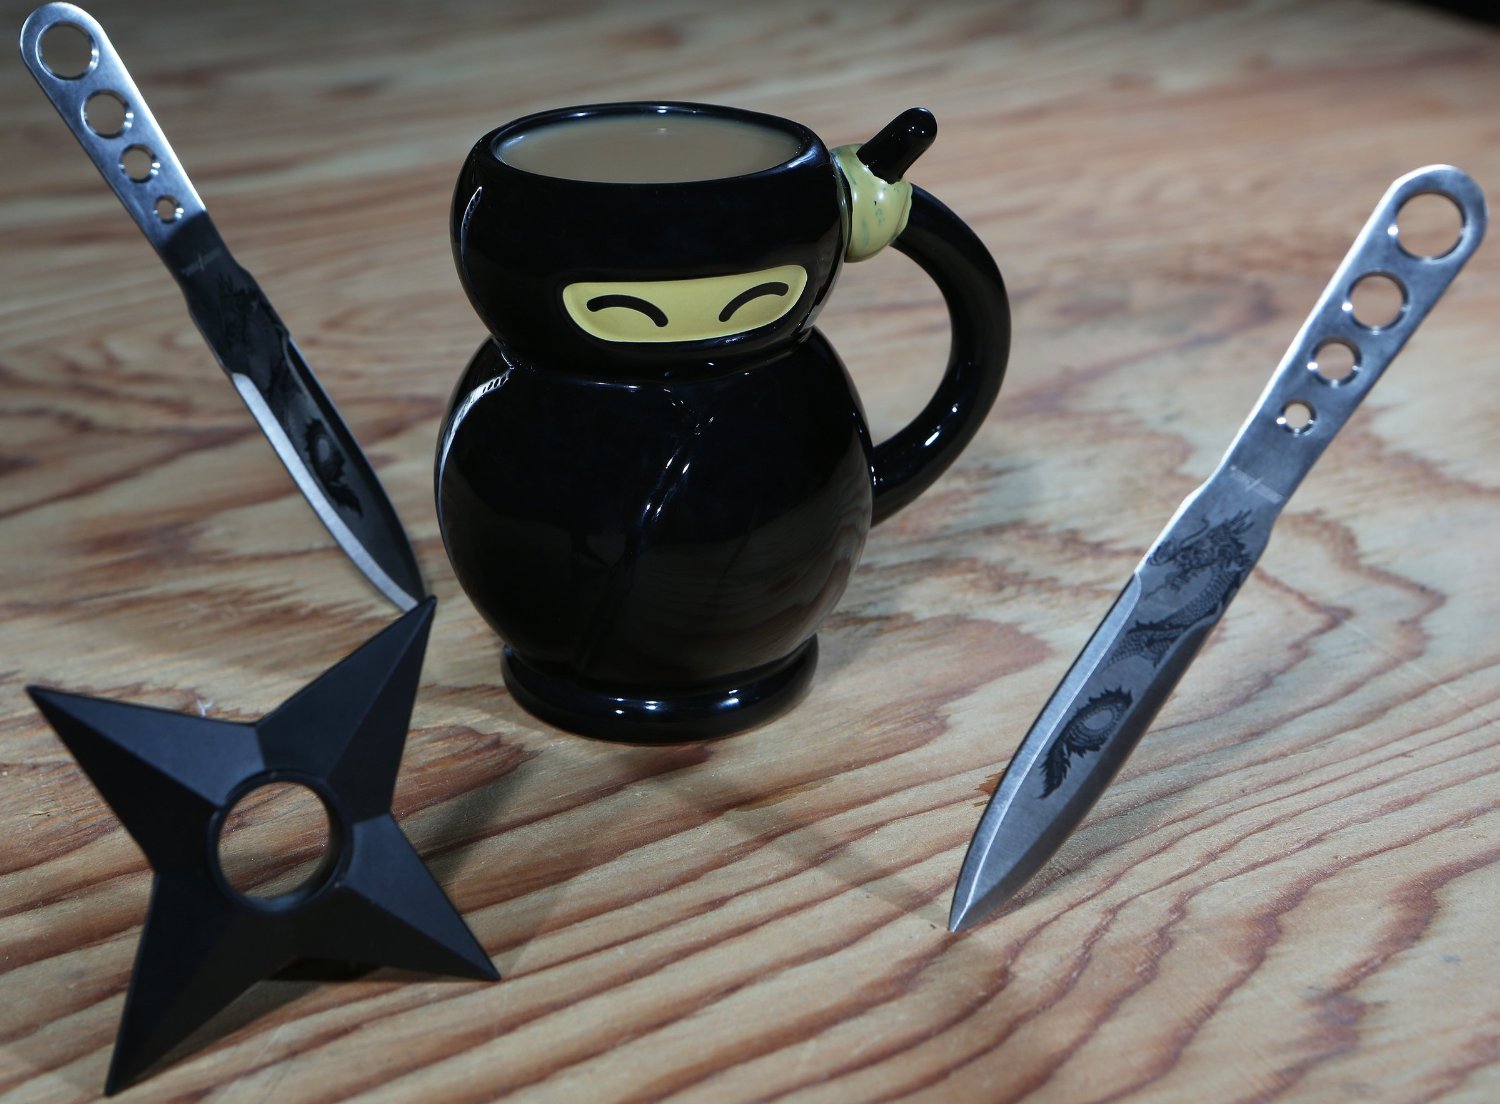 Ninja Mug for Badass Mornings